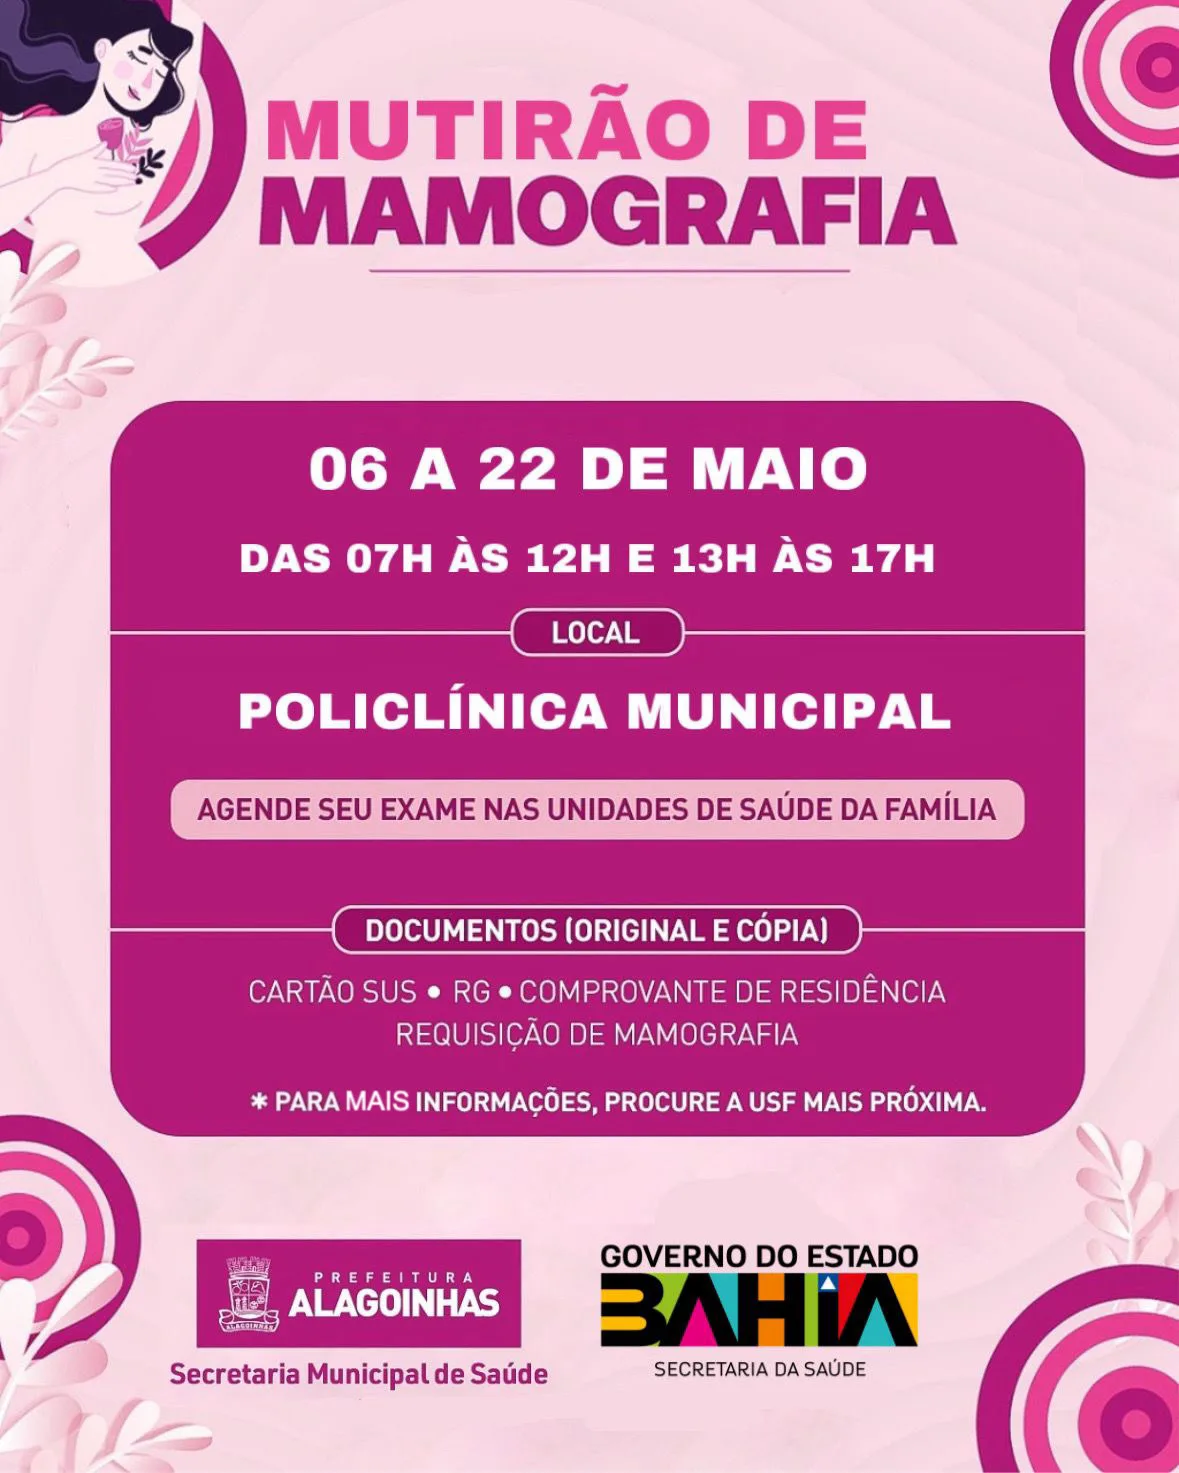 Mutirão de mamografia vai garantir atendimento de 2 mil mulheres em Alagoinhas